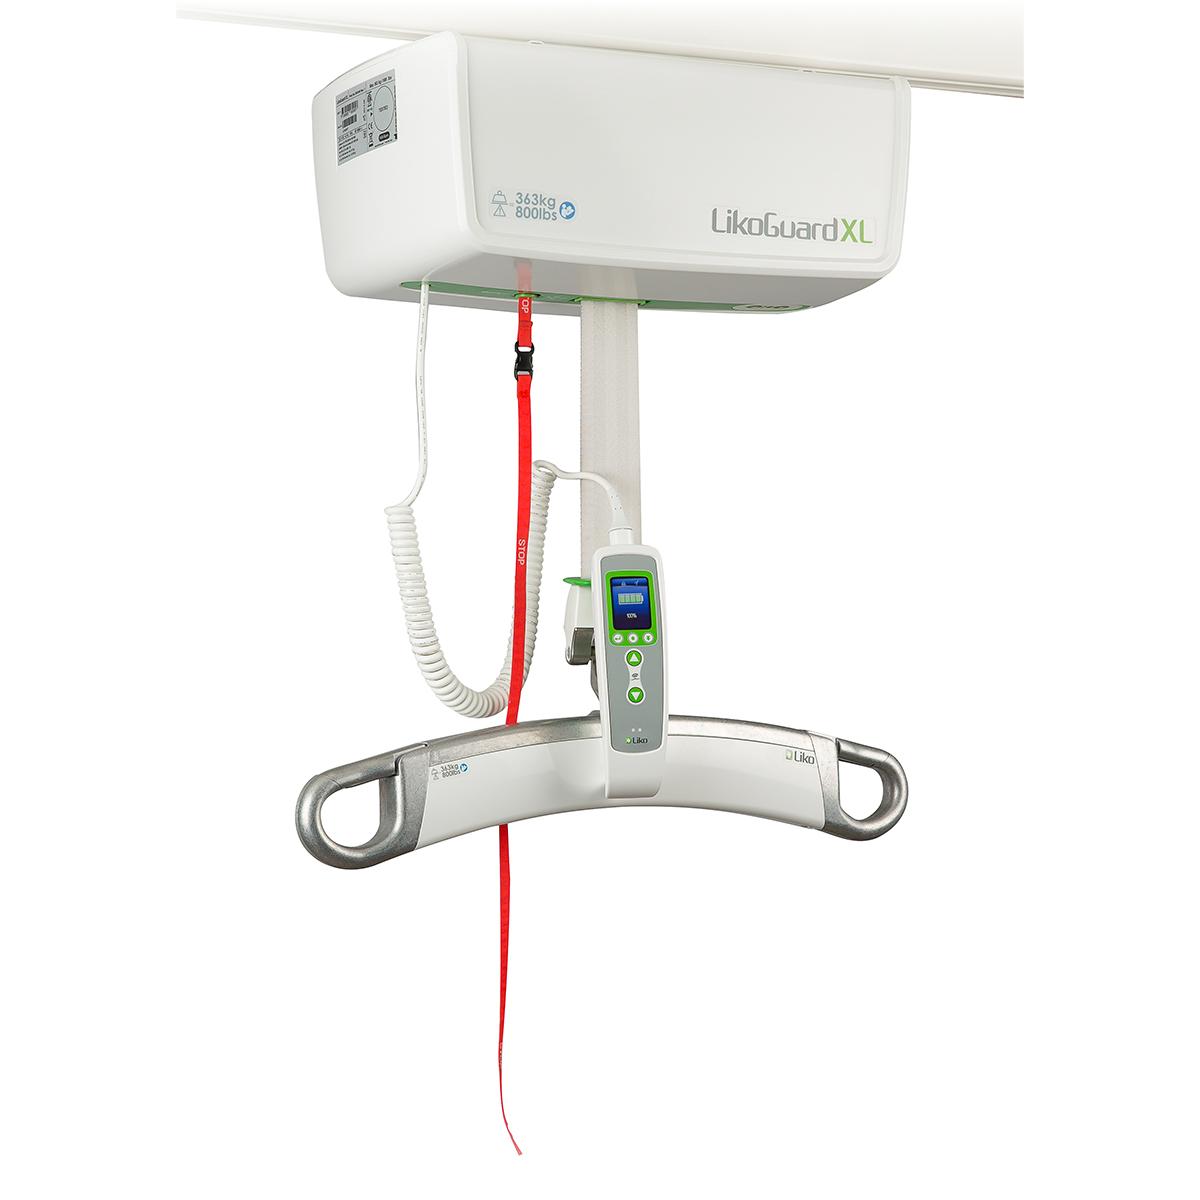 Szynowy podnośnik pacjenta LikoGuard XL, widok od tyłu. Czerwony przycisk awaryjny znajduje się w lewym górnym rogu urządzenia.